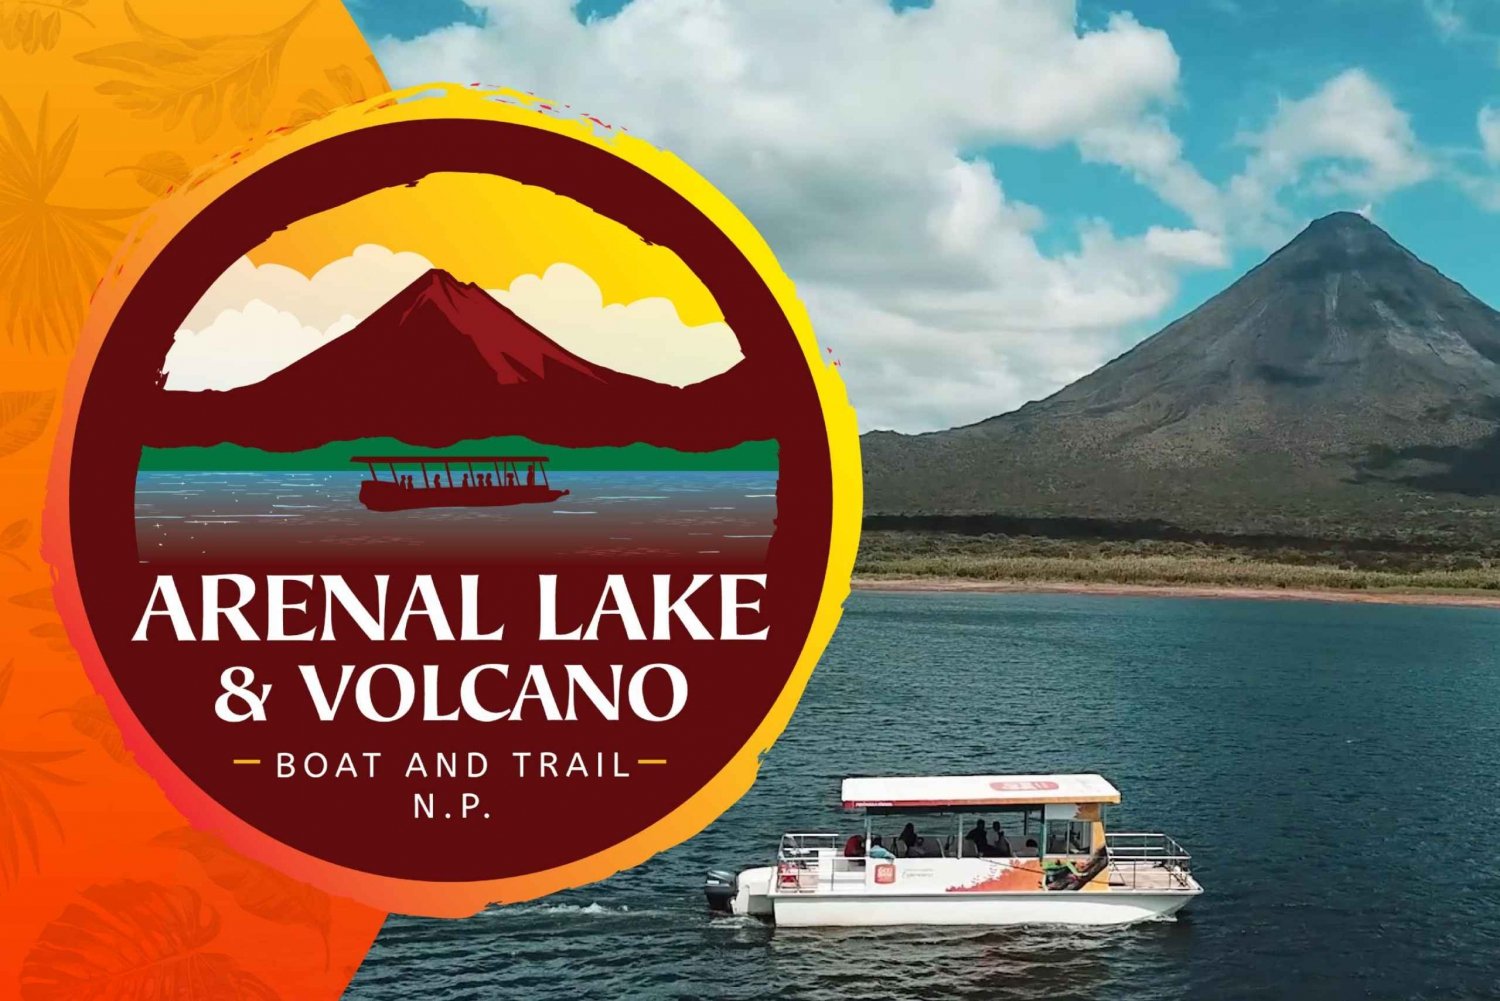 Parque Nacional do Vulcão Arenal para grupos pequenos e passeio ecológico pelo lago